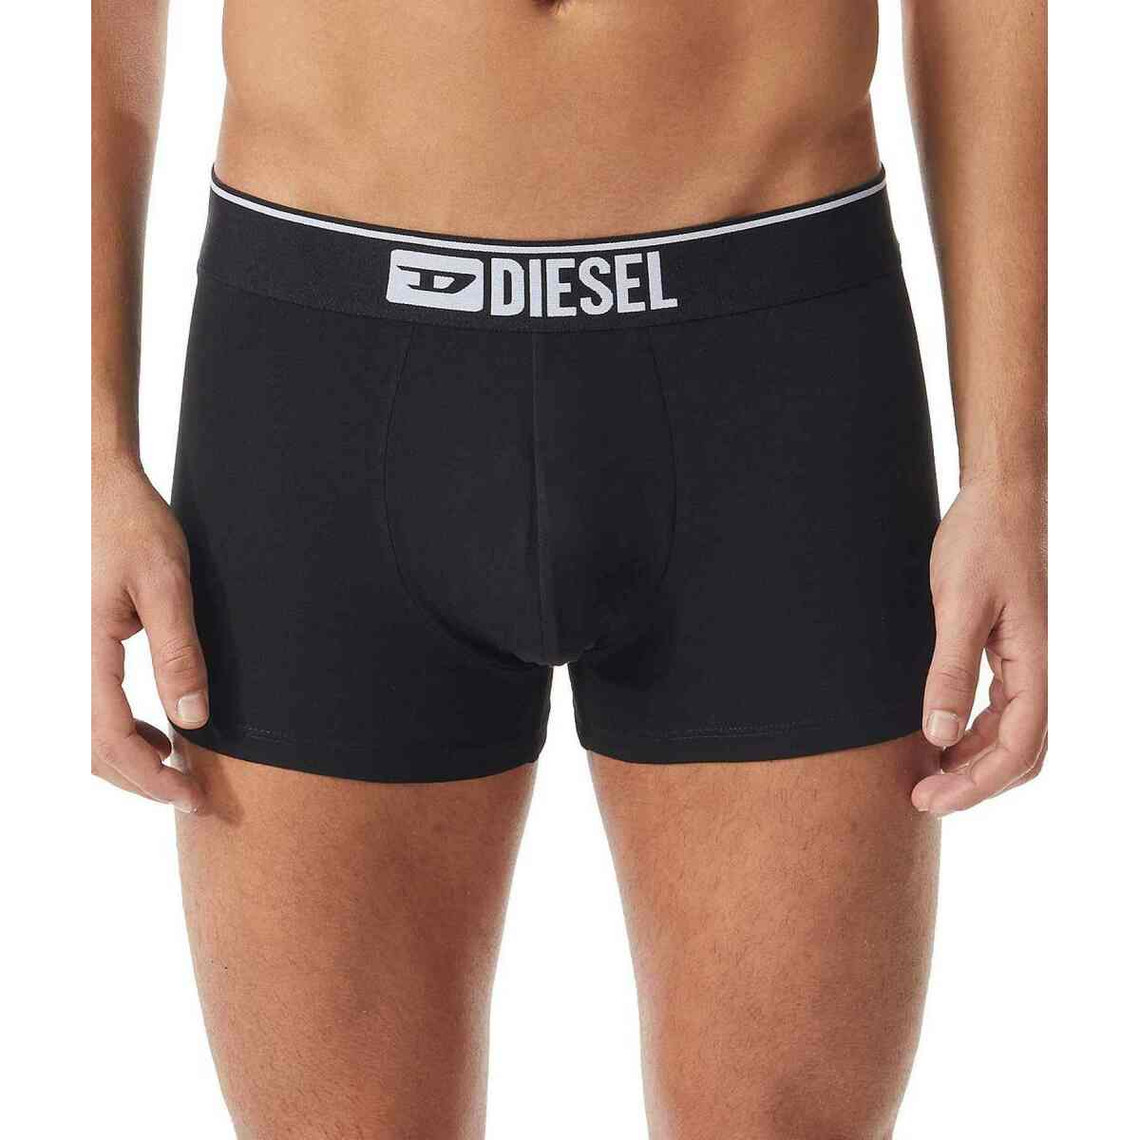 Lot de 3 Boxers homme - Noirs Diesel Underwear en coton